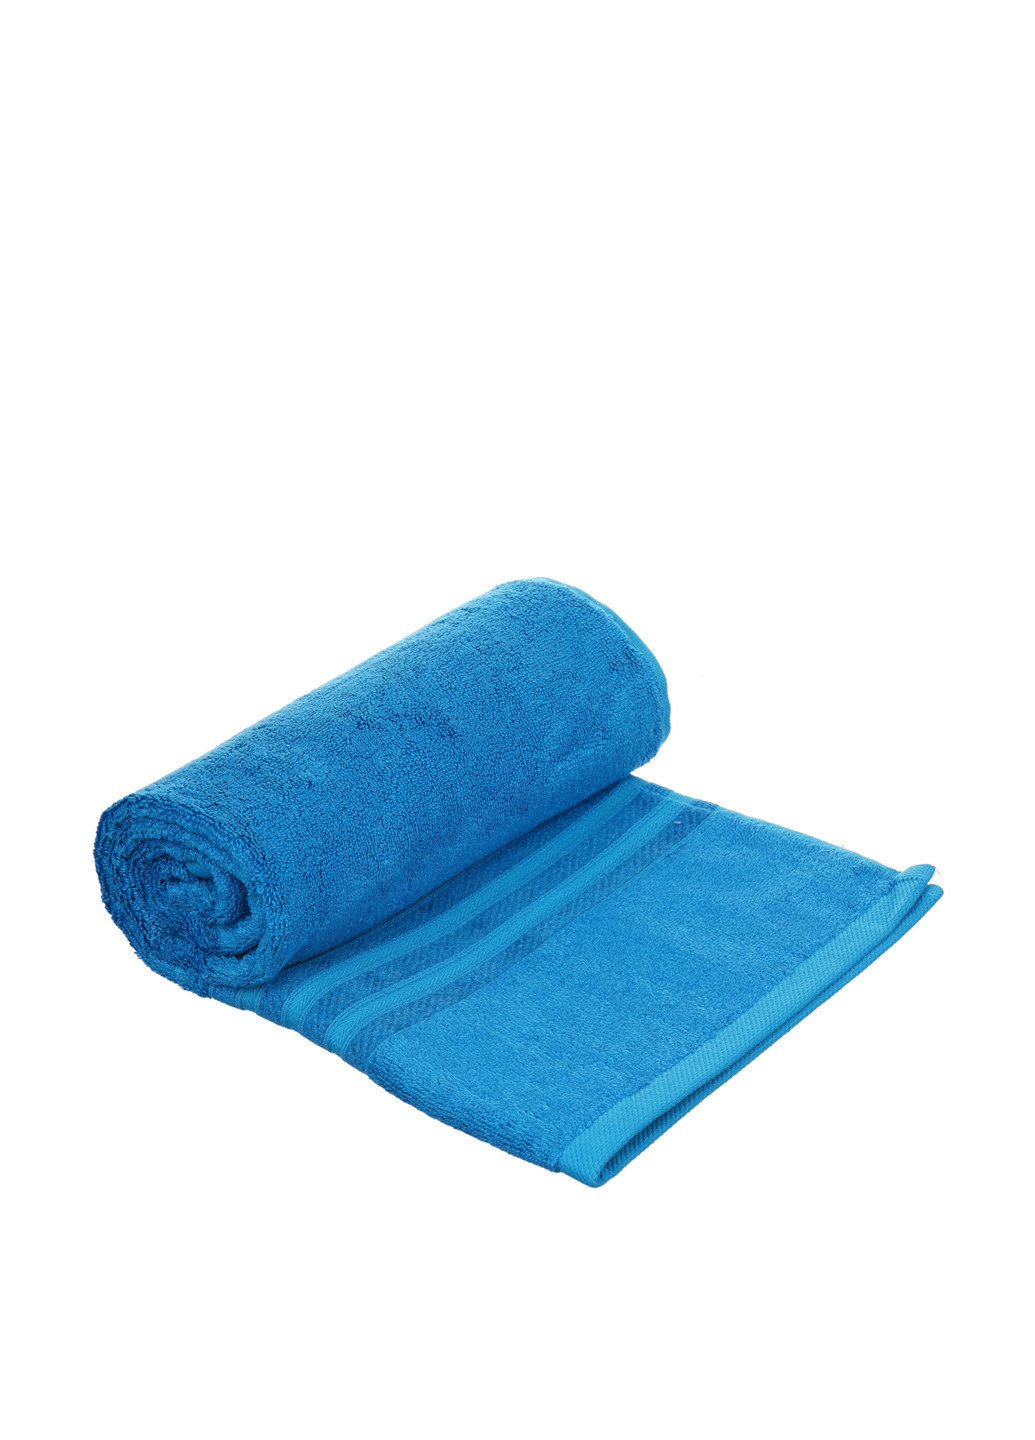 Tac полотенце, 50х90 см однотонный светло-синий производство - Турция